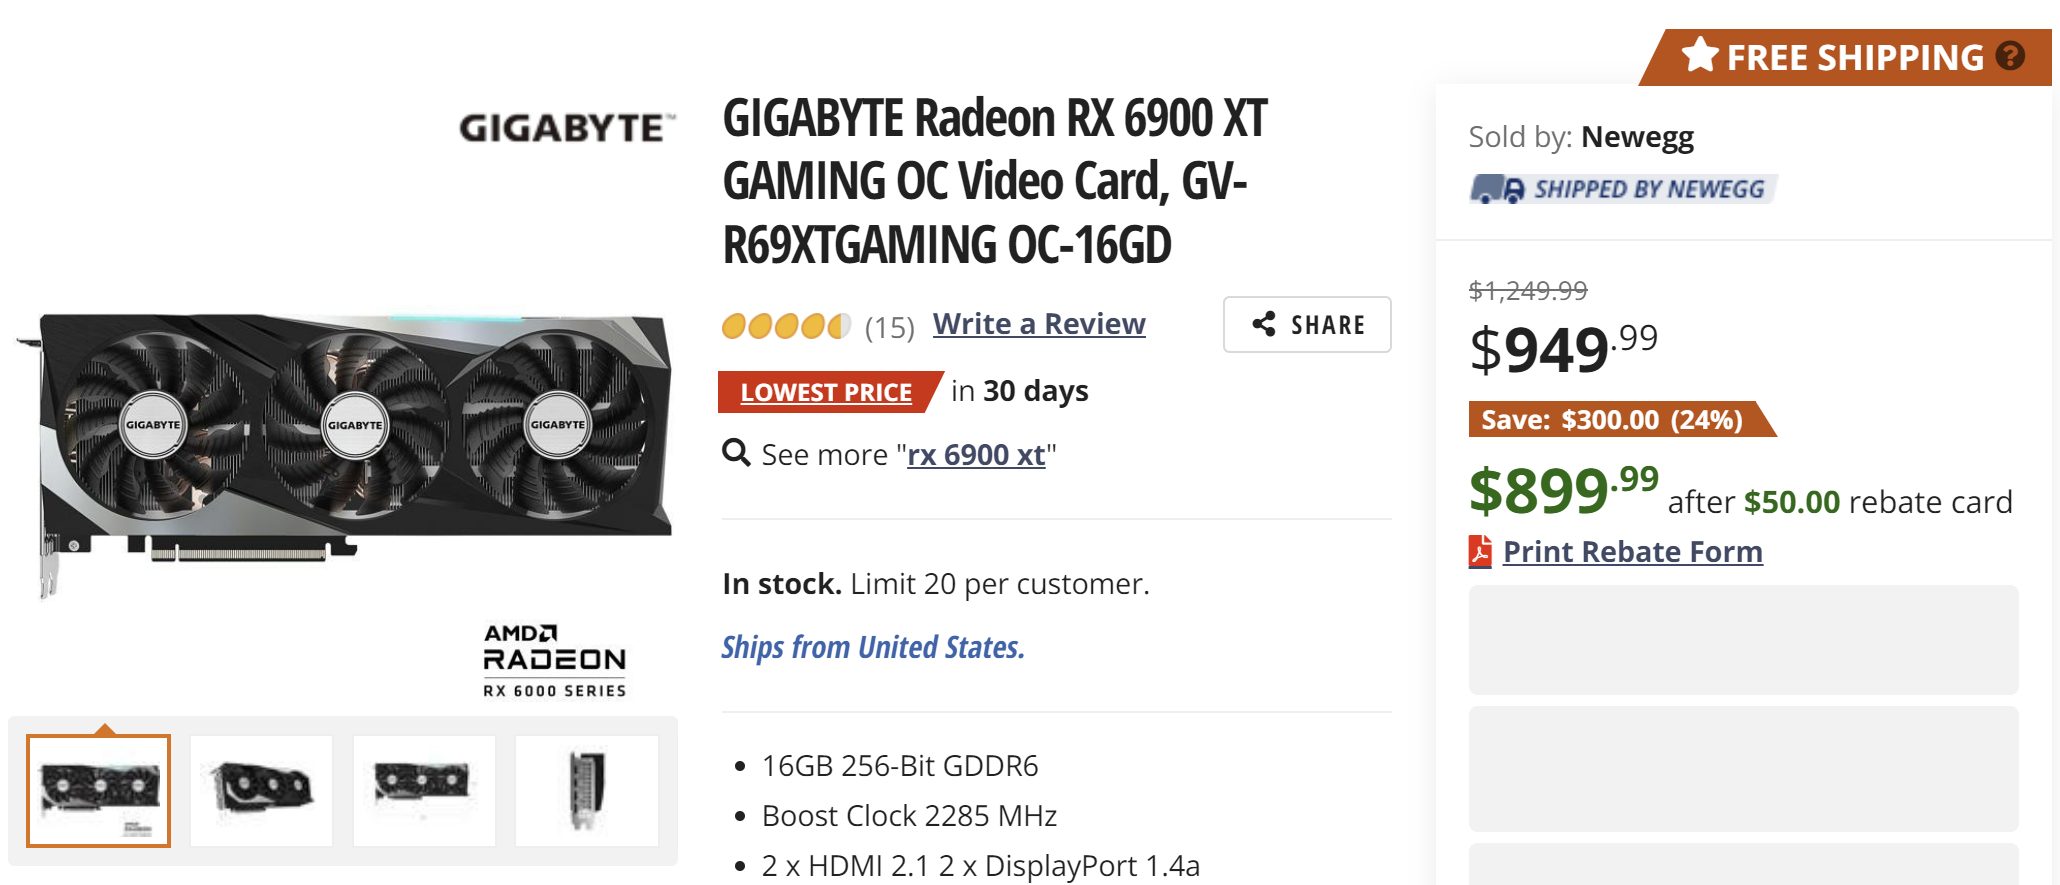 GIGABYTE GT 740 OC 4 GB Specs